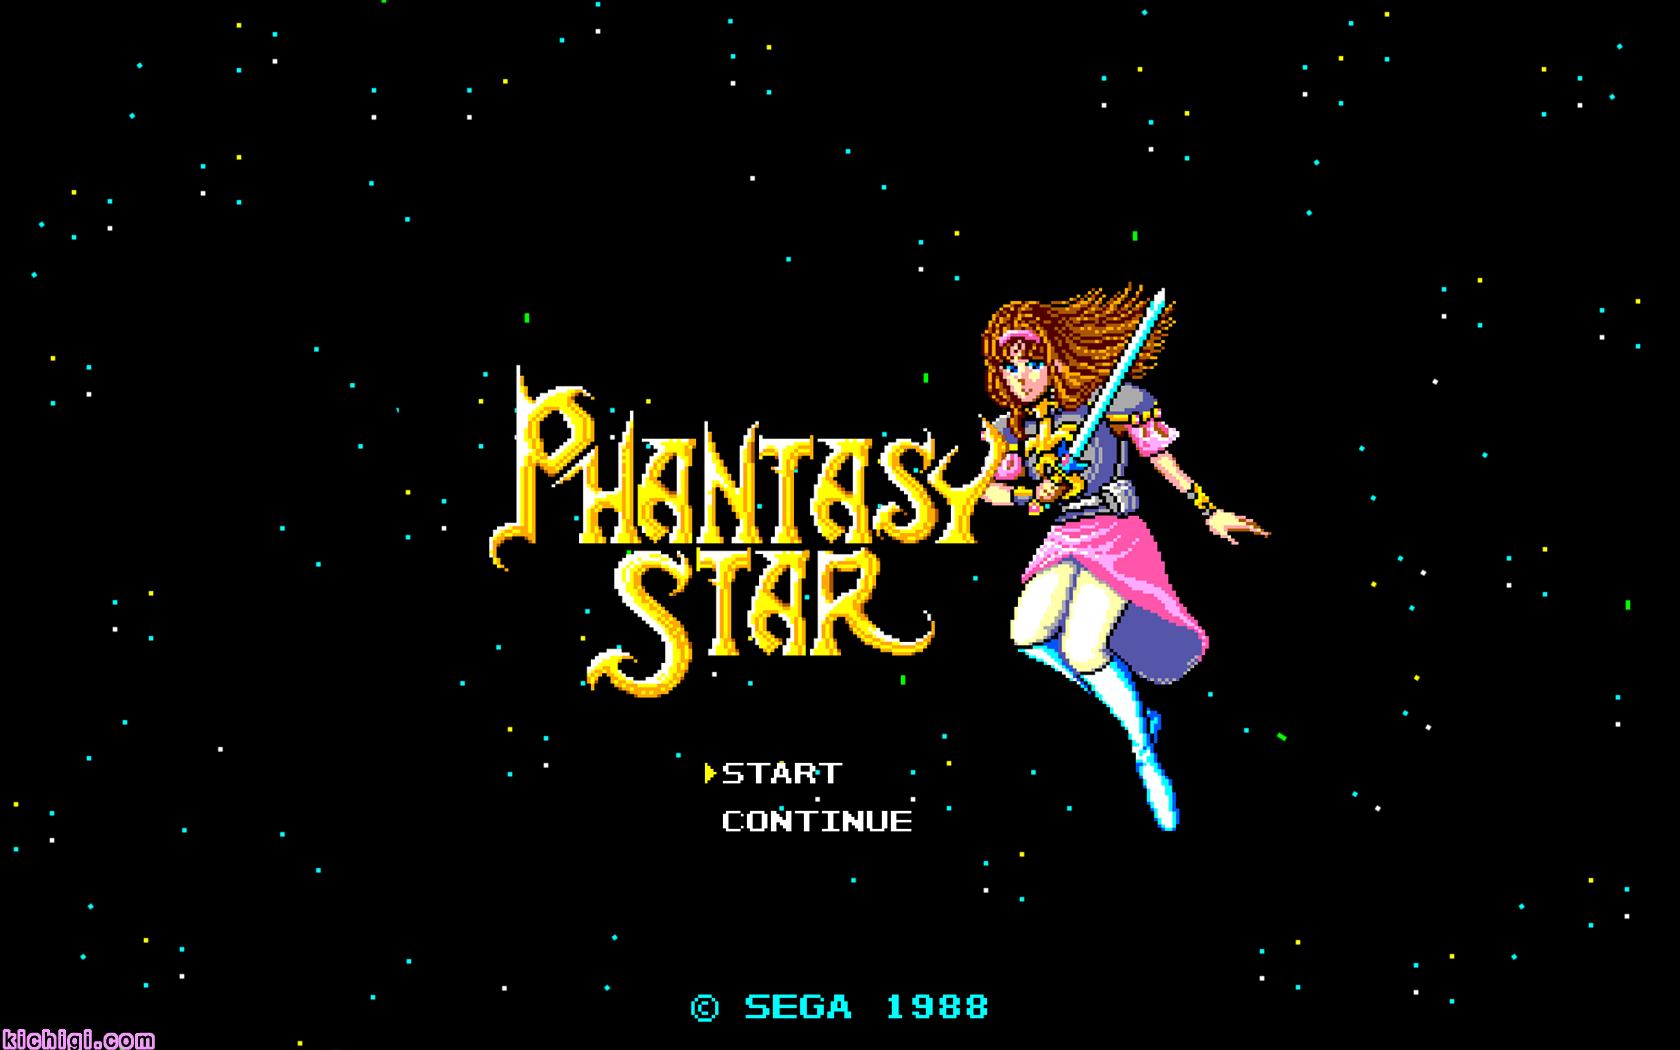 cartoon - Hantasy Star Start Continue Sega 1988 kichigi.com